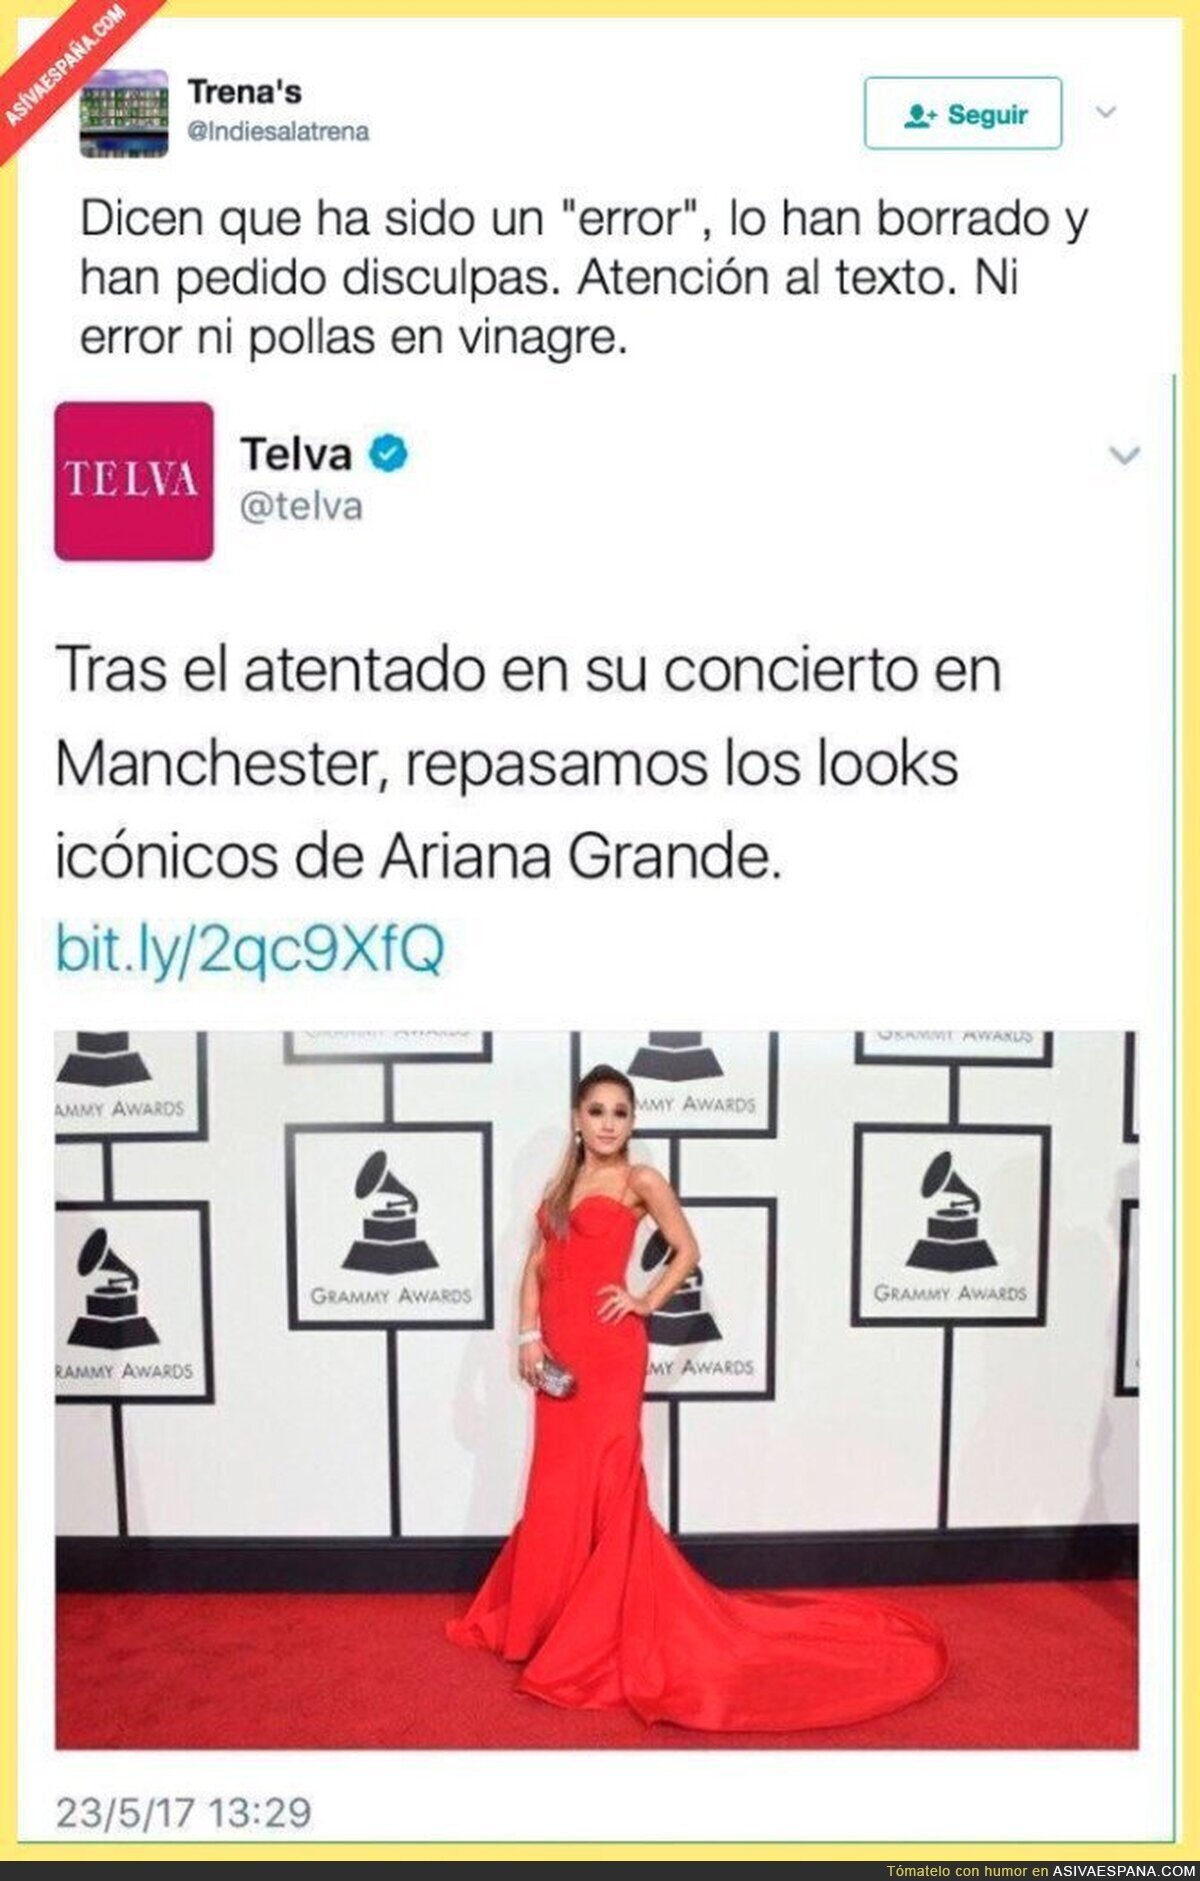 El polémico tuit de la revista TELVA aprovechando el atentado en el concierto de Ariana Grande